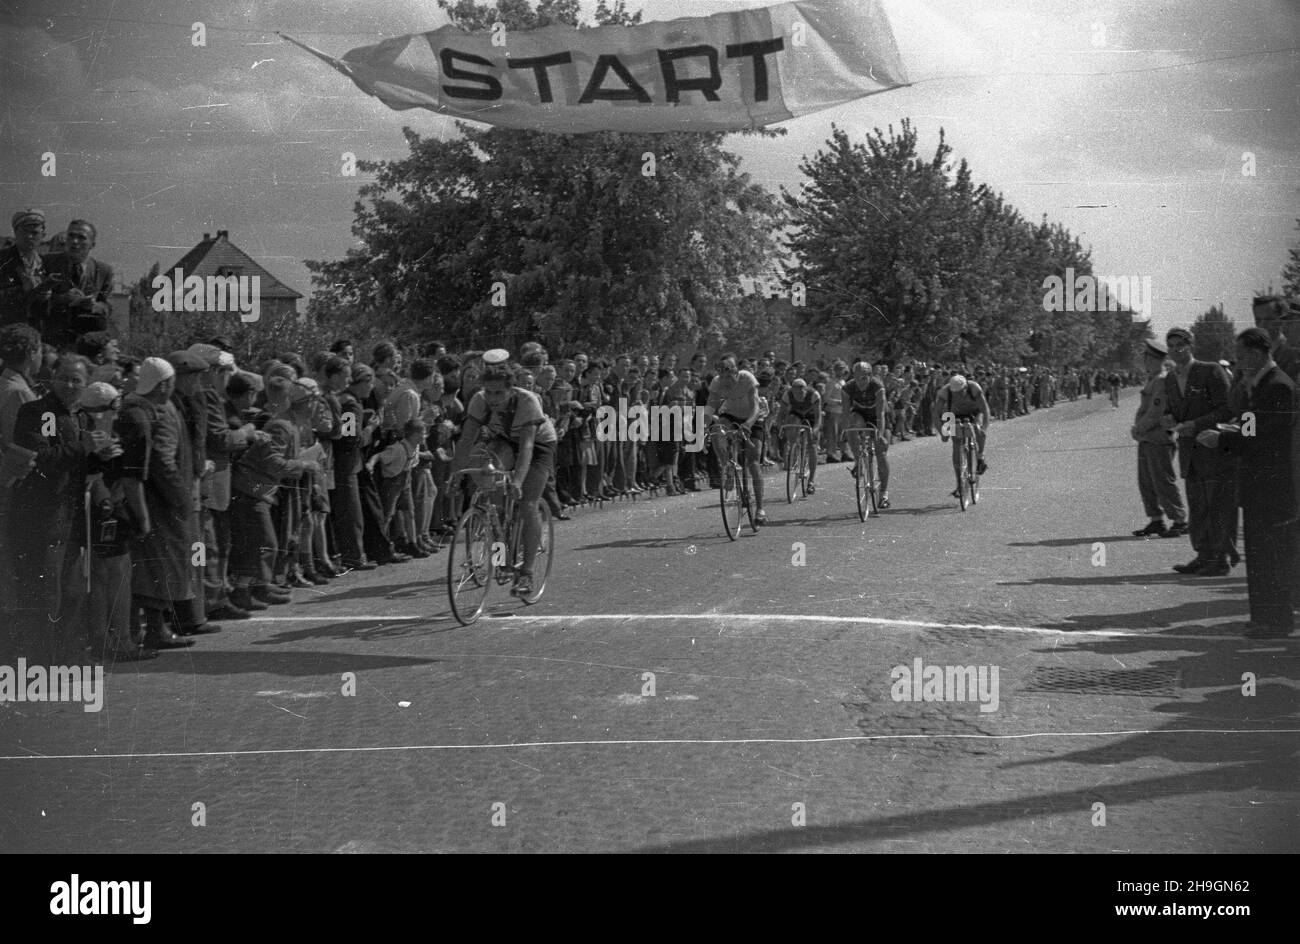 Bytom, 1948-06-29. VII Wyœcig Kolarski Dooko³a Polski (Tour de Pologne) odbywa³ siê w dniach 22 czerwca - 4 lipca. Wystartowa³o 71 zawodników, przyjecha³y reprezentacje Czechos³owacji, Szwecji, Wêgier. Nz. kolarze na mecie 7. etapu Wroc³aw Bytom. mw  PAP      Bytom, June 29, 1948. The 7th Tour de Pologne cycling race was held on 22 June-4 July with 71 contenders taking part, including teams from Czechoslovakia, Sweden, Hungary. Pictured: cyclists at the finish of the 7th stage from Wroclaw to Bytom.   mw  PAP Stock Photo